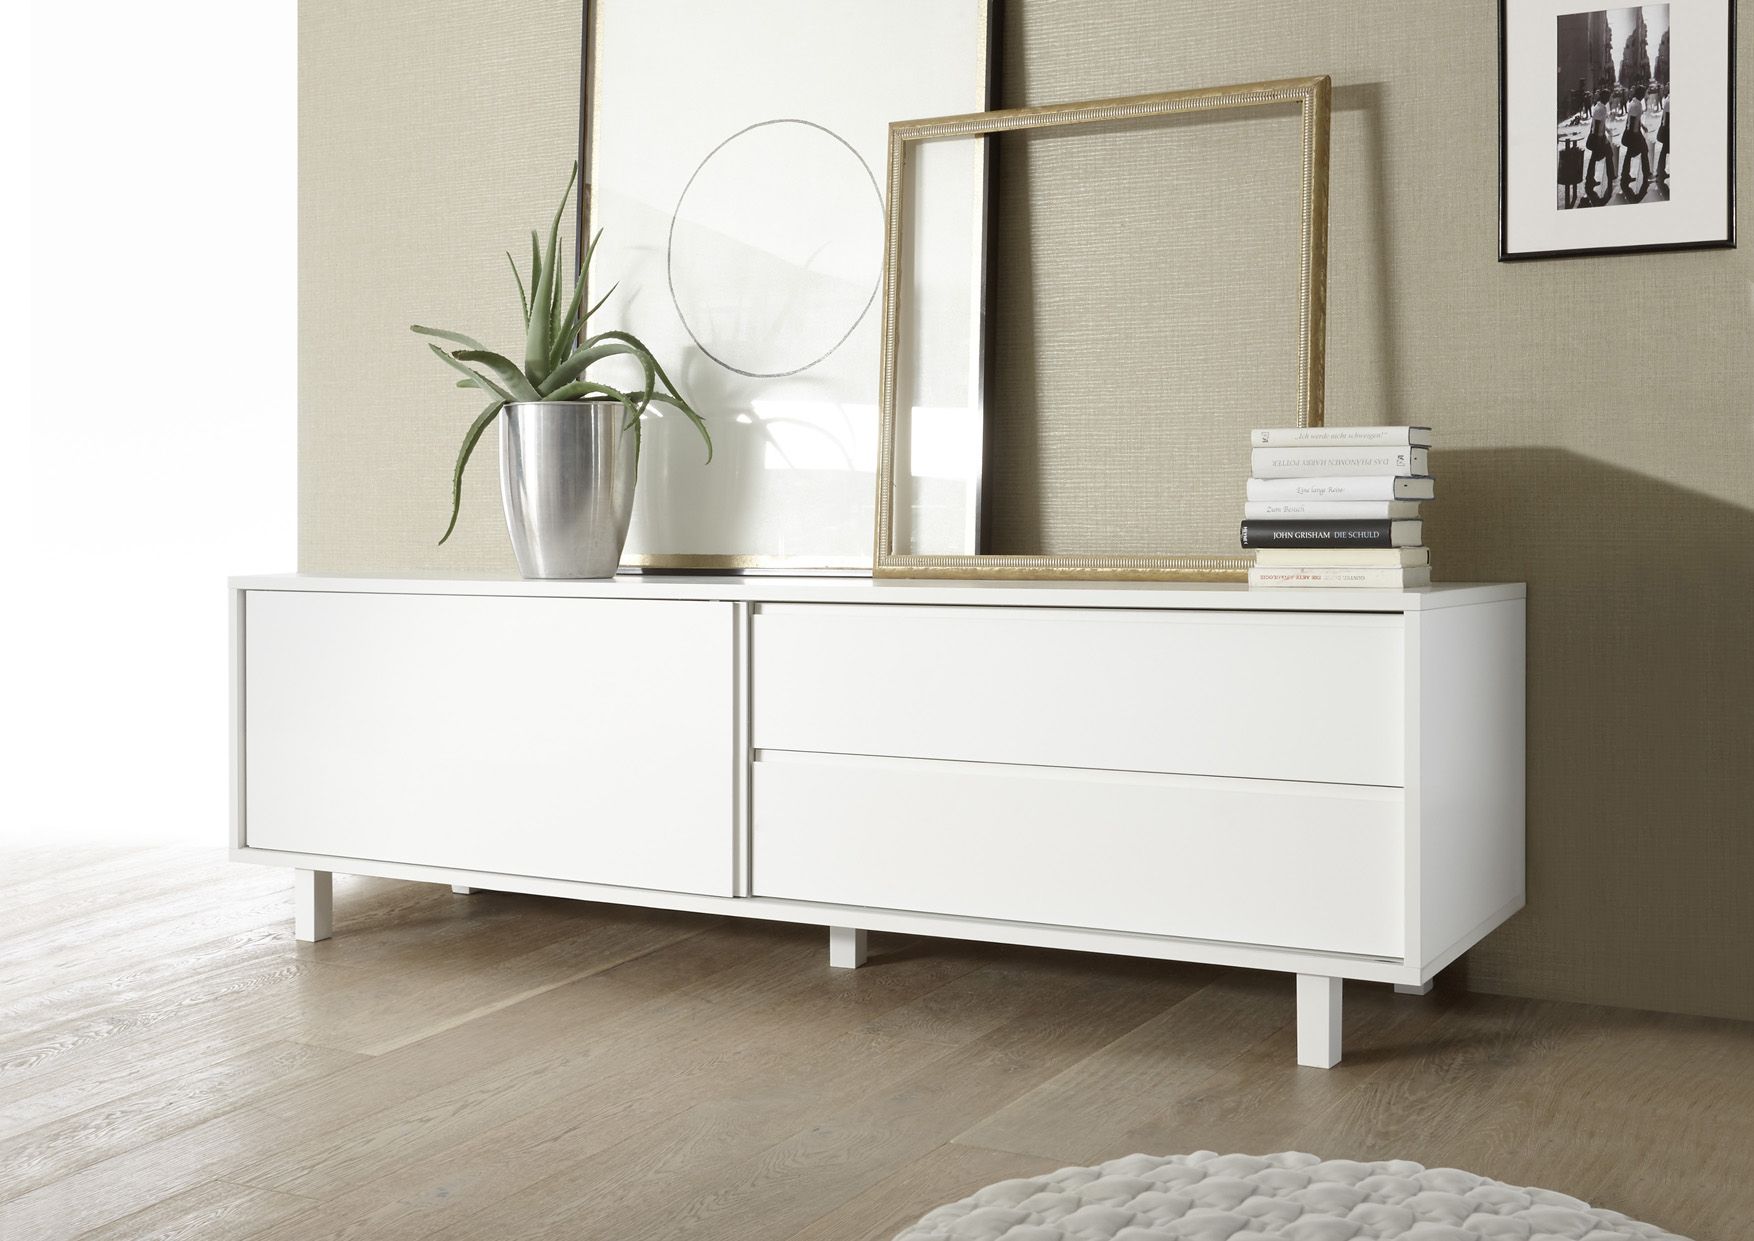 Mat wit tv meubel | AktieWonen.nl - hoogglans en matte meubelen